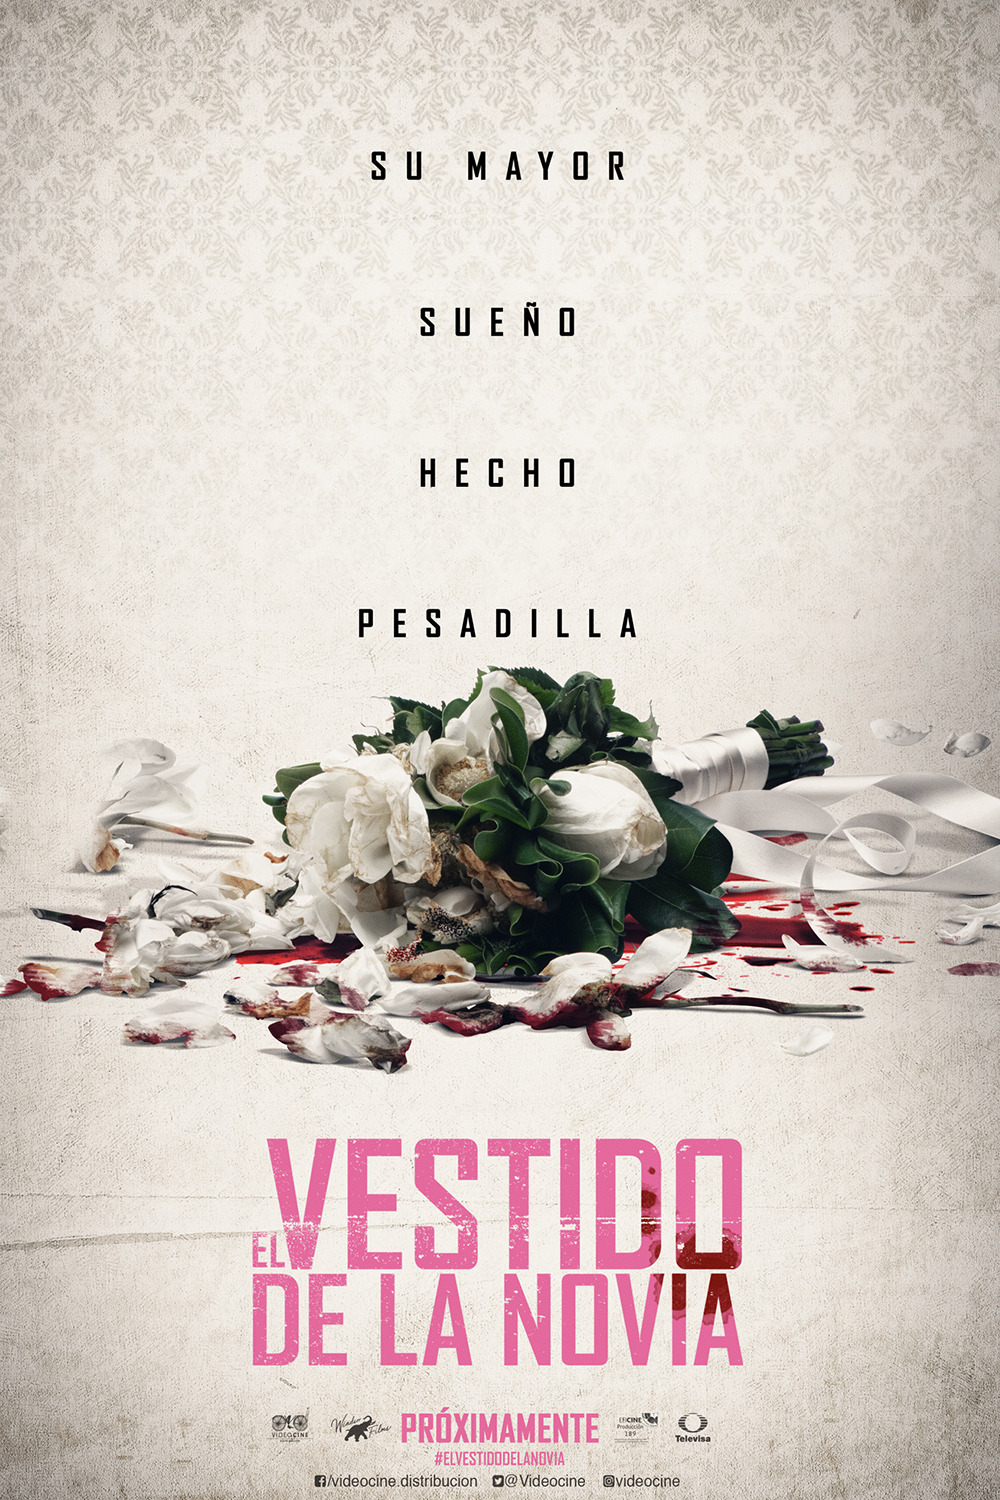 Extra Large Movie Poster Image for El Vestido De La Novia (#5 of 10)